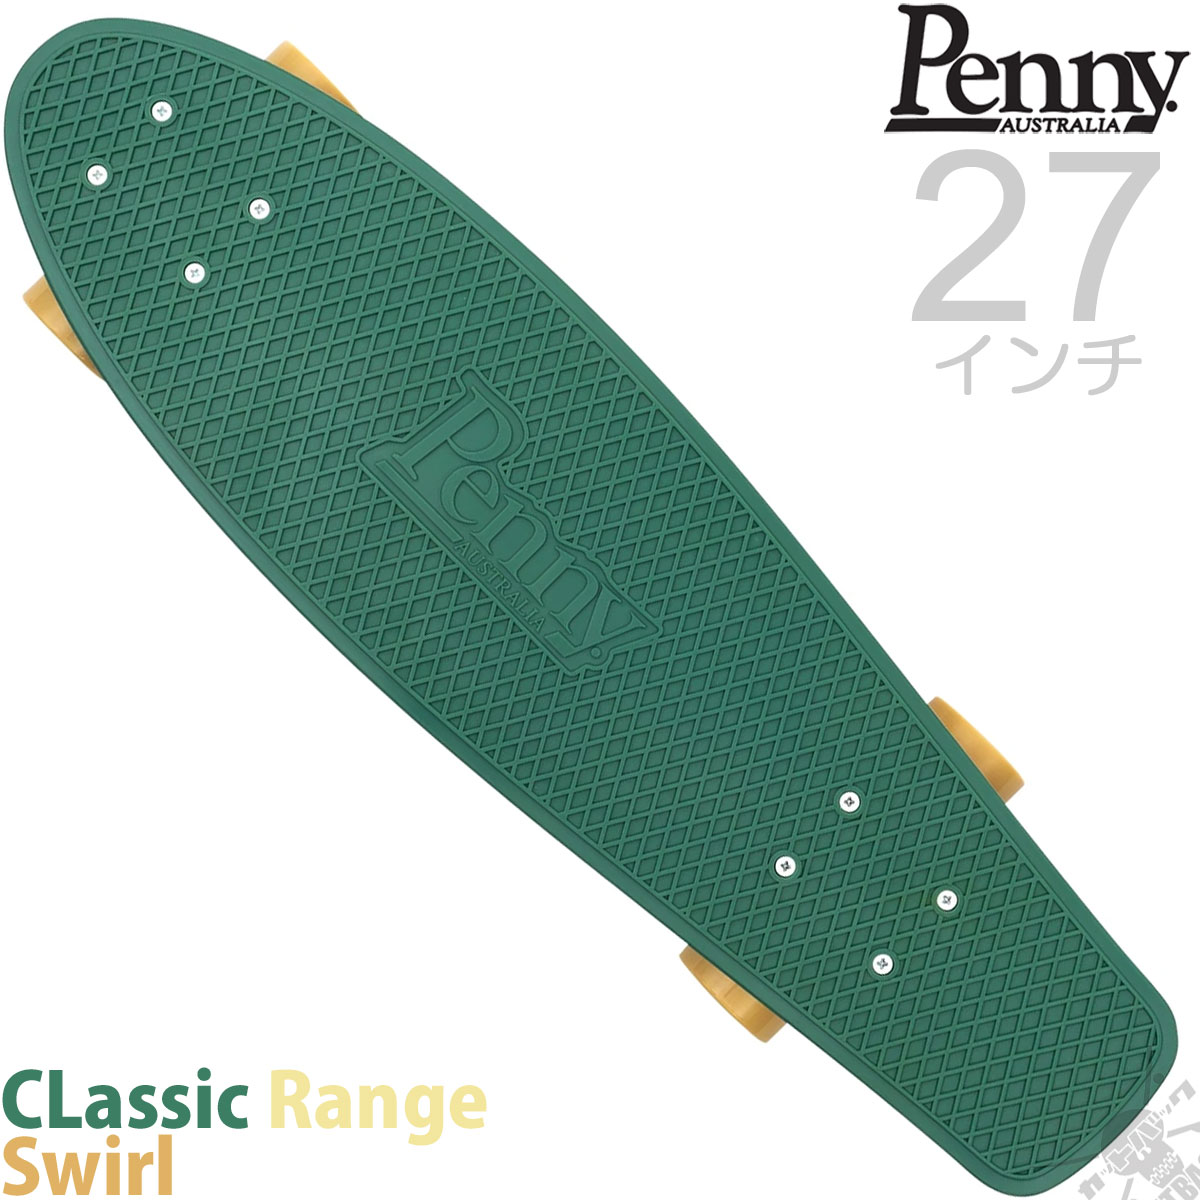 ペニースケートボード 27インチ スワール Penny Skateboard CLassic Range Swirl スケートボード スケボー  スケート ペニー コンプリート セット 渦巻きデザイン 完成品 クルーザー プラスチック ブランド 国内正規品 | スケートボード専門店カットバック